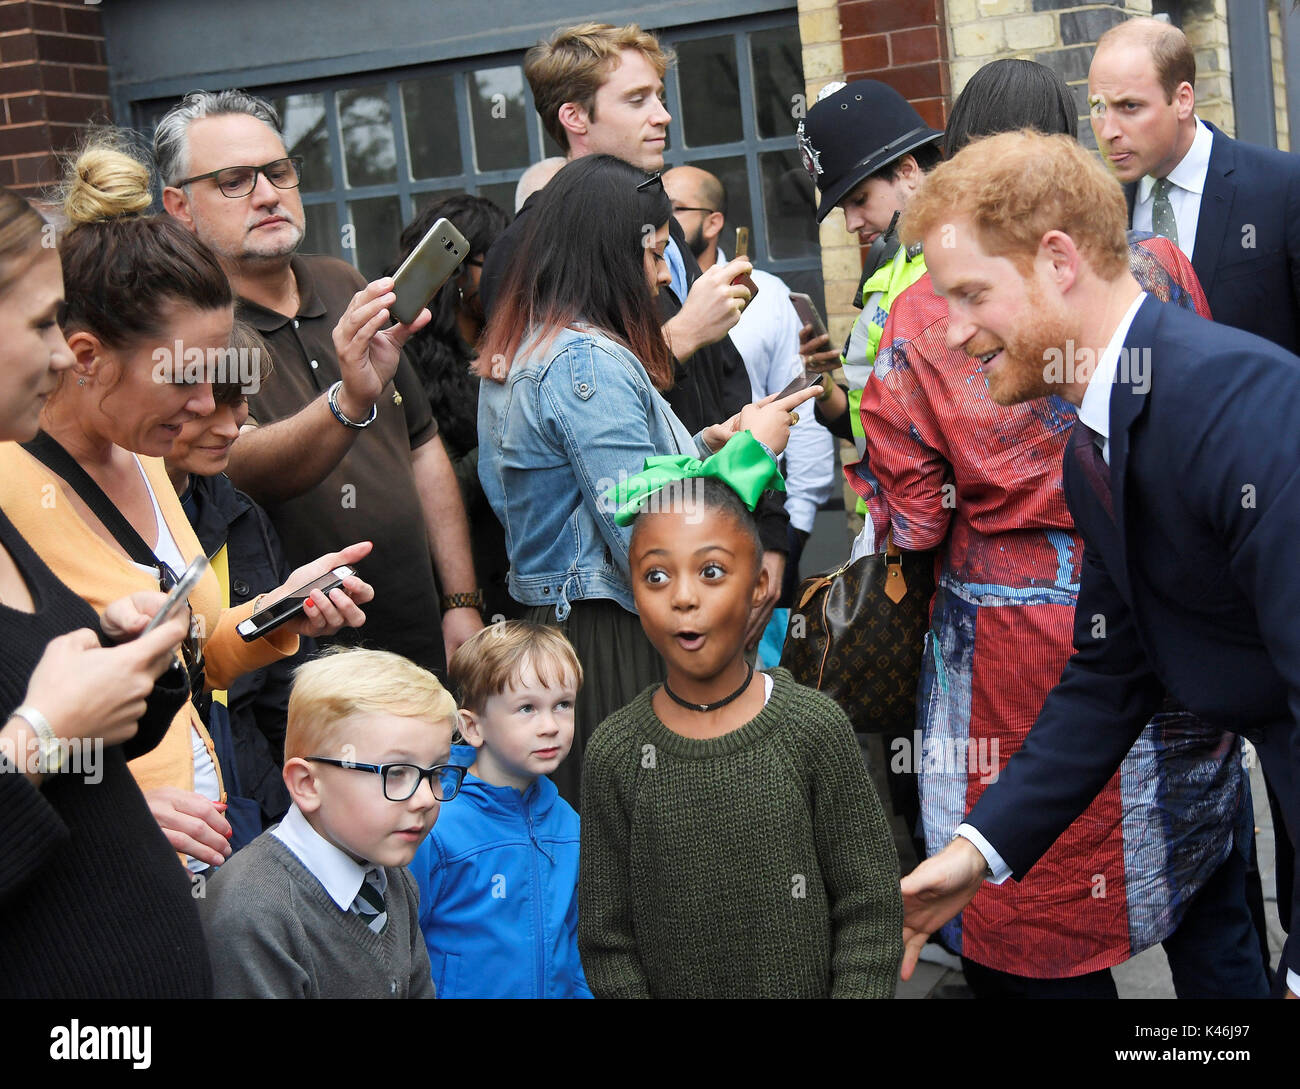 Príncipe Harry habla a los niños después de una visita a la comunidad de apoyo4Grenfell en Londres. Foto de stock